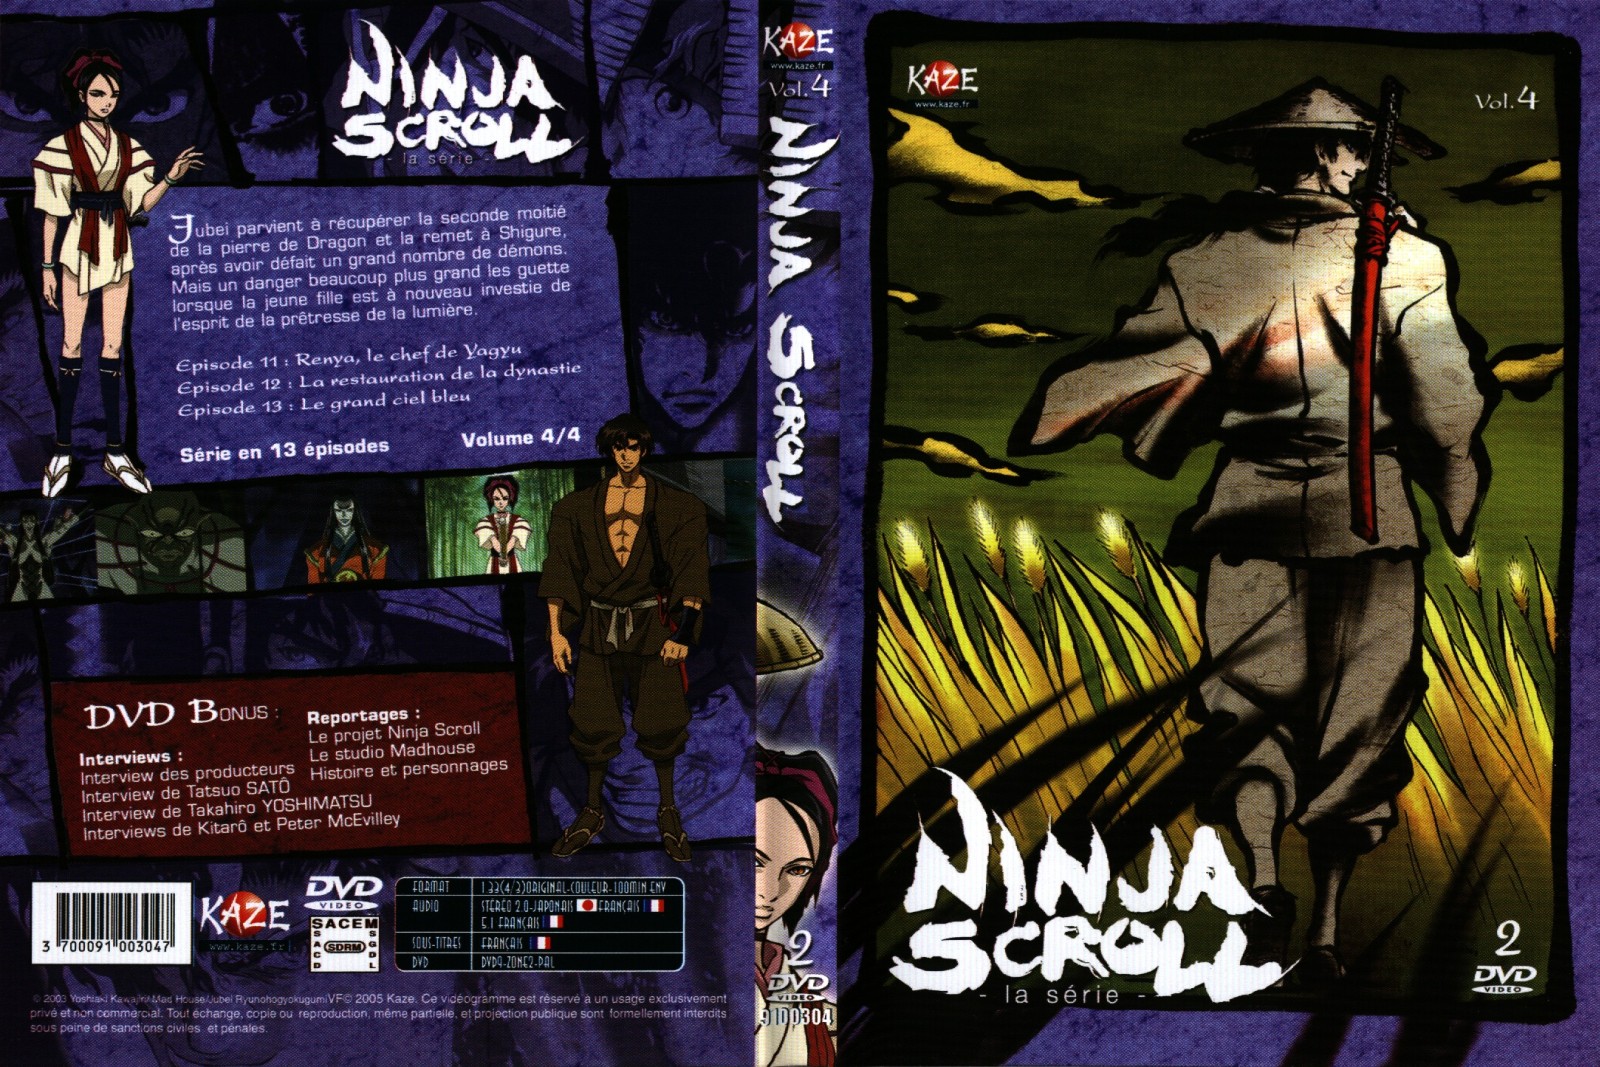 Jaquette DVD Ninja scroll la srie vol 4